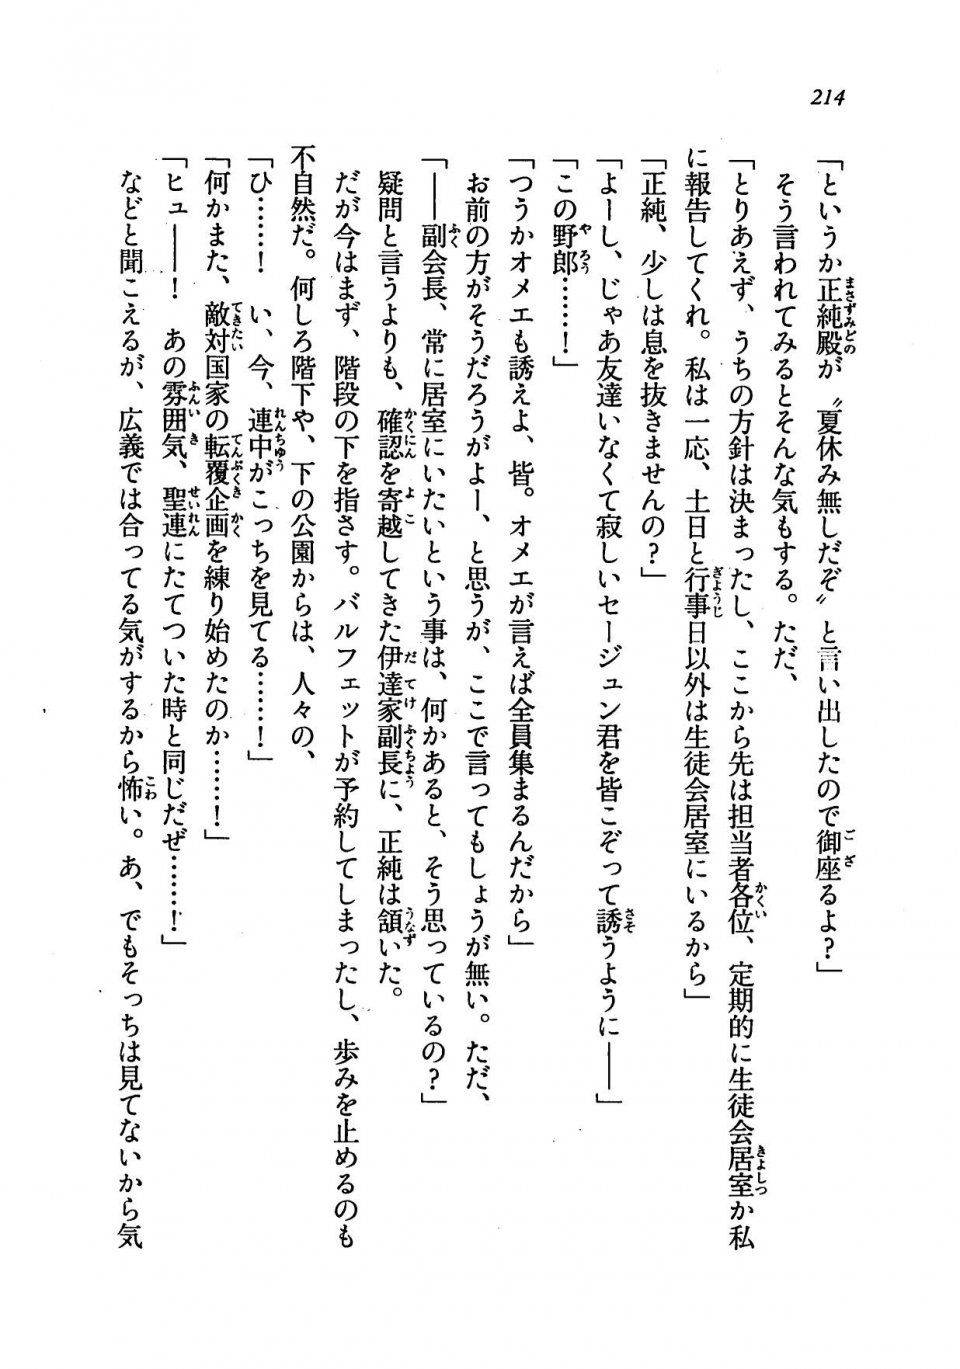 Kyoukai Senjou no Horizon LN Vol 19(8A) - Photo #214